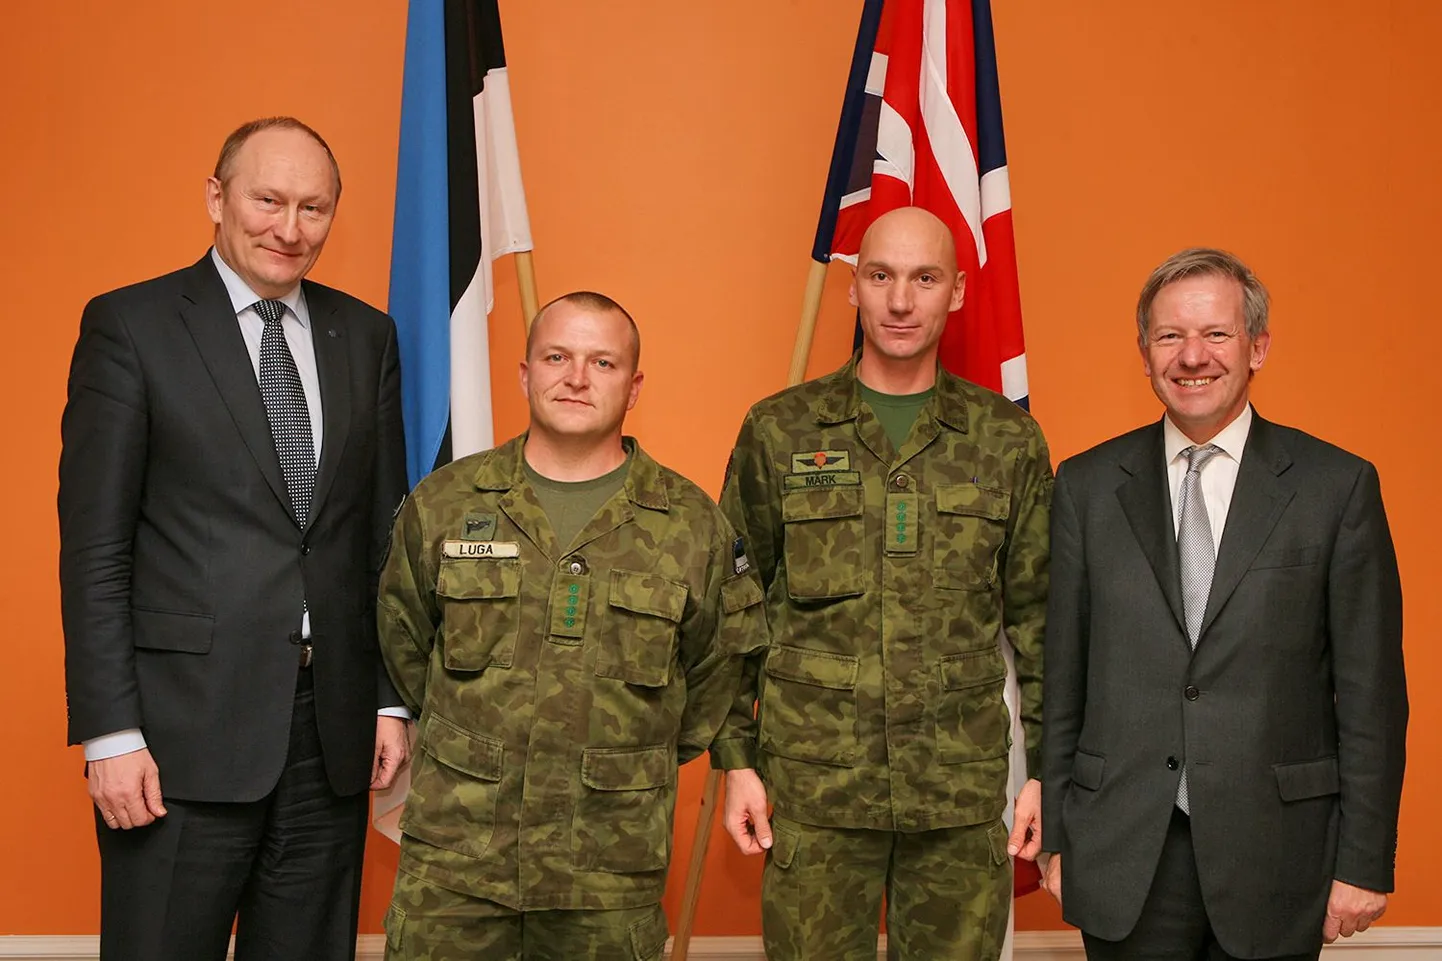 Jaak Aaviksoo, Afganistanis teeninud Eesti ohvitserid ja sir Sherard Cowper-Coles.